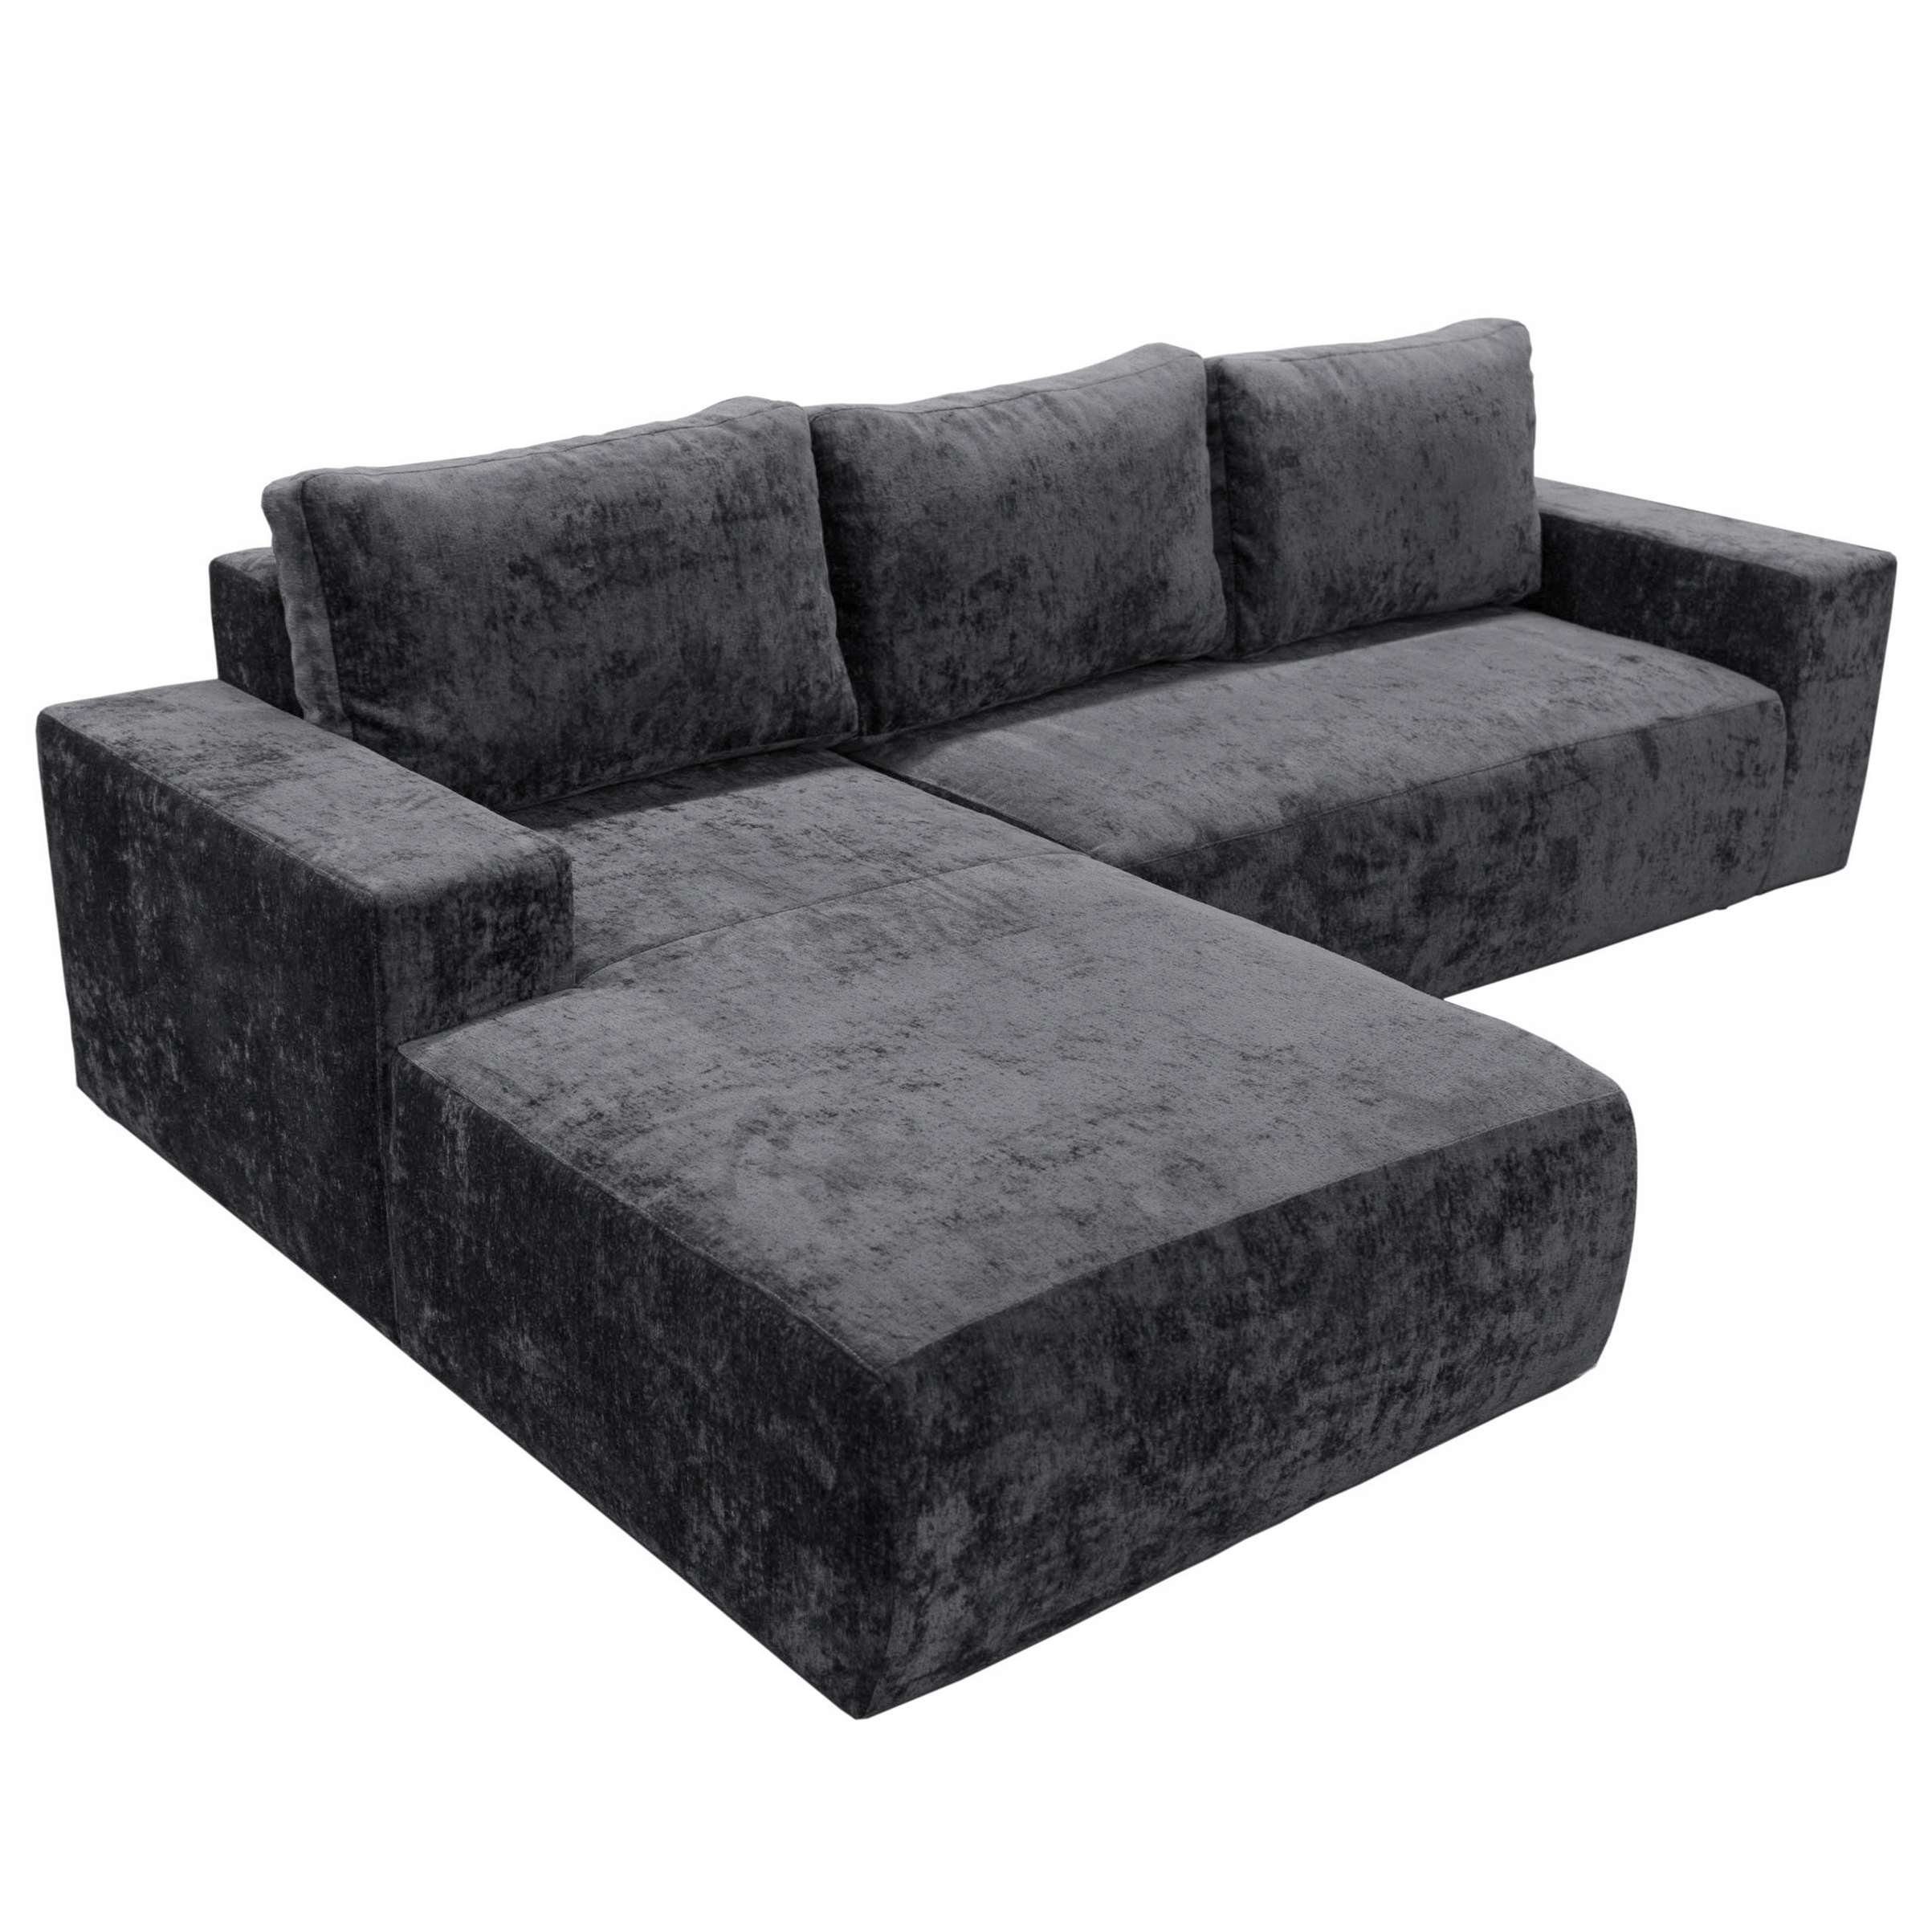 Furnix Schlafsofa MIRZAM Sofa in L-Form Polstercouch mit Schlaffunktion, DL-Ausziehautomatik, mit Bettkasten, Maße: B270 x H85 x T175 cm LR90 Grau